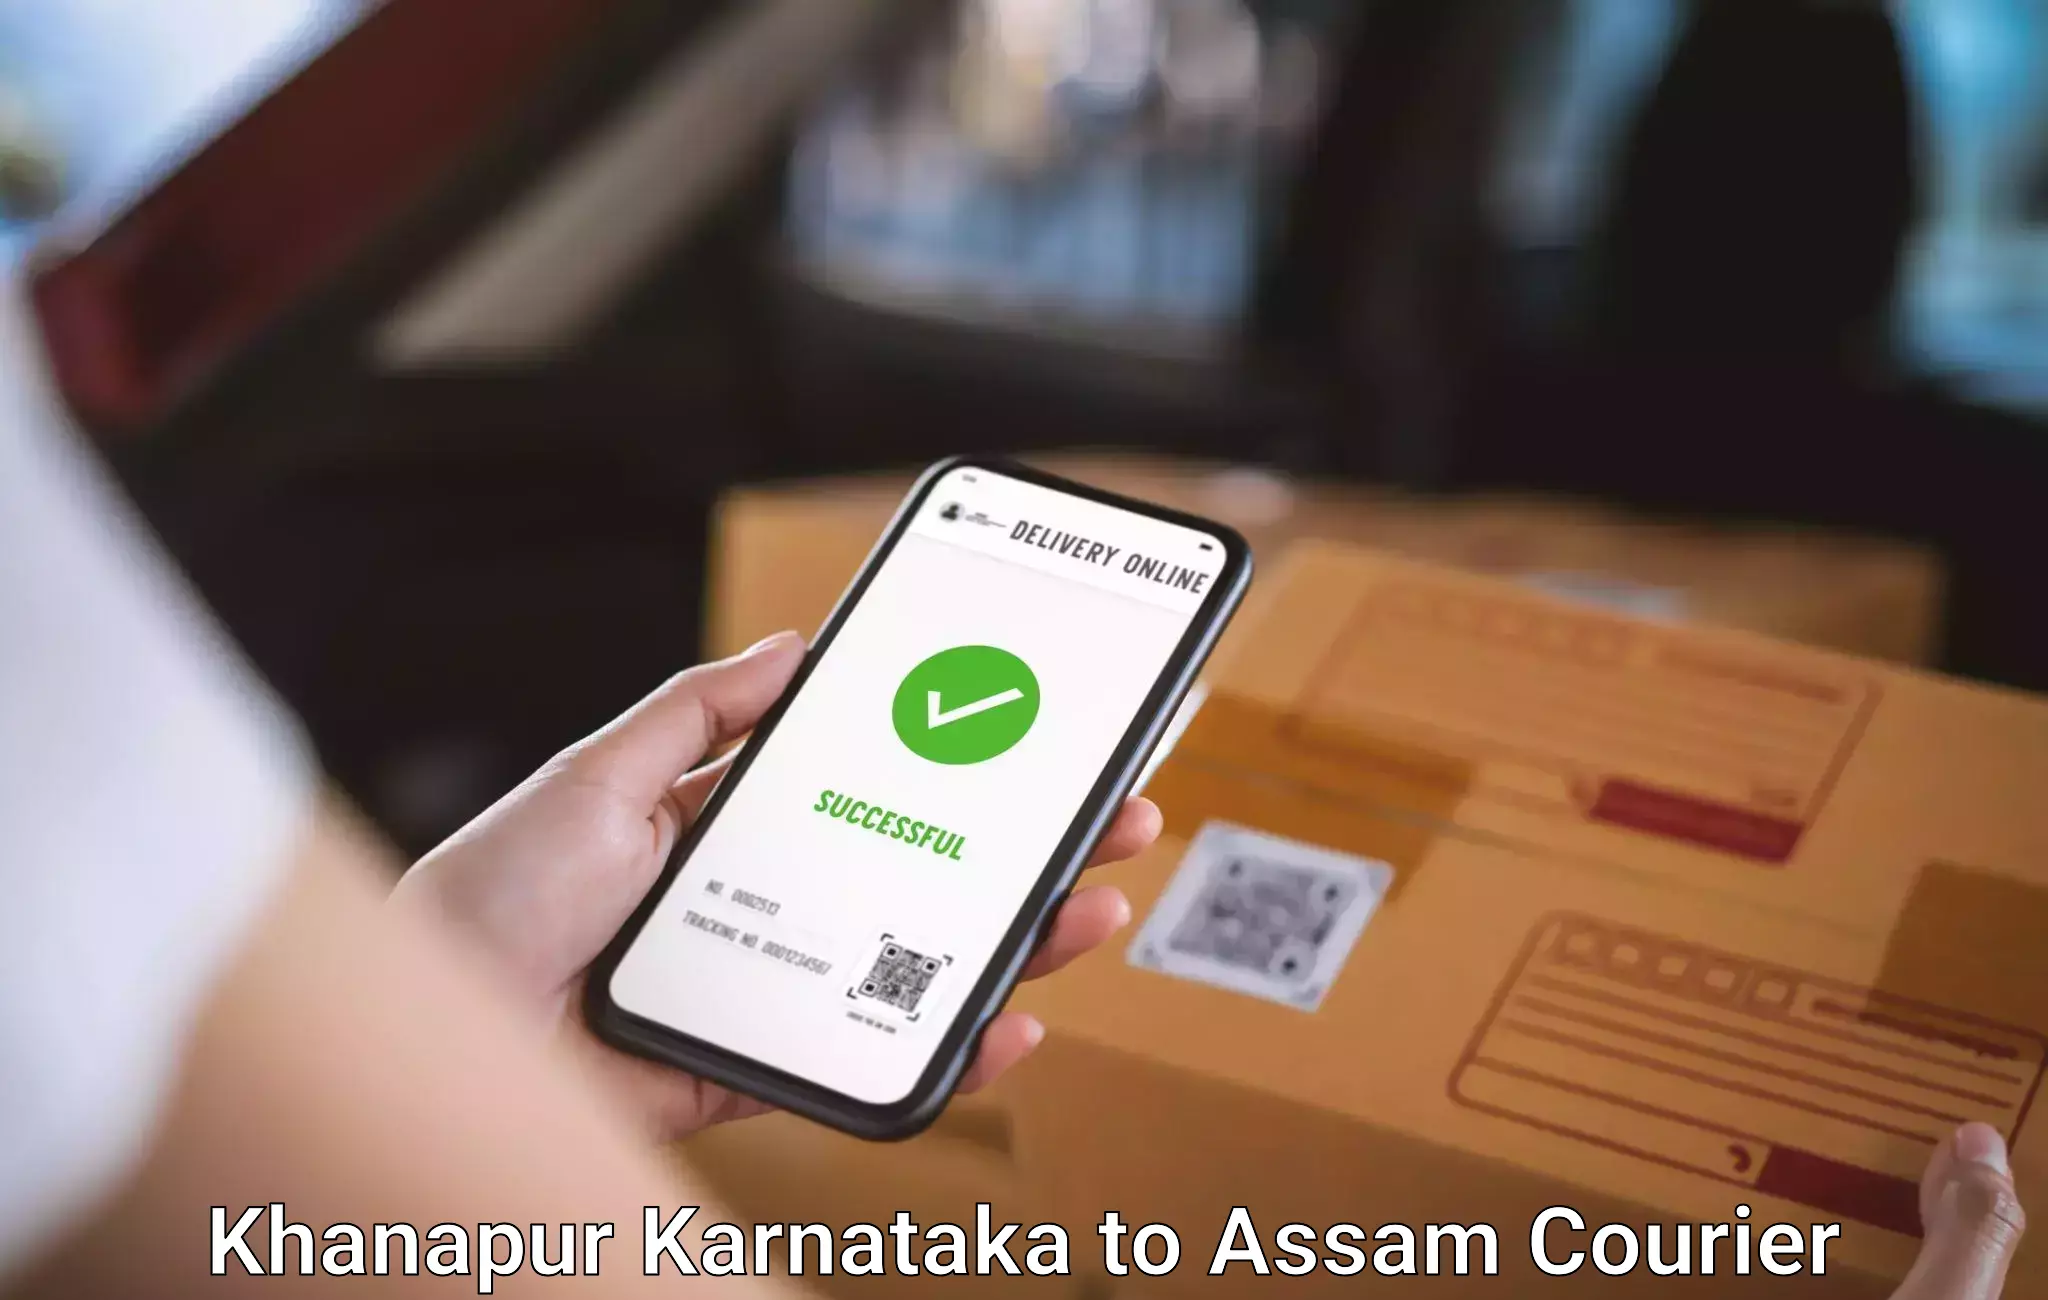 Baggage delivery solutions Khanapur Karnataka to Jagiroad